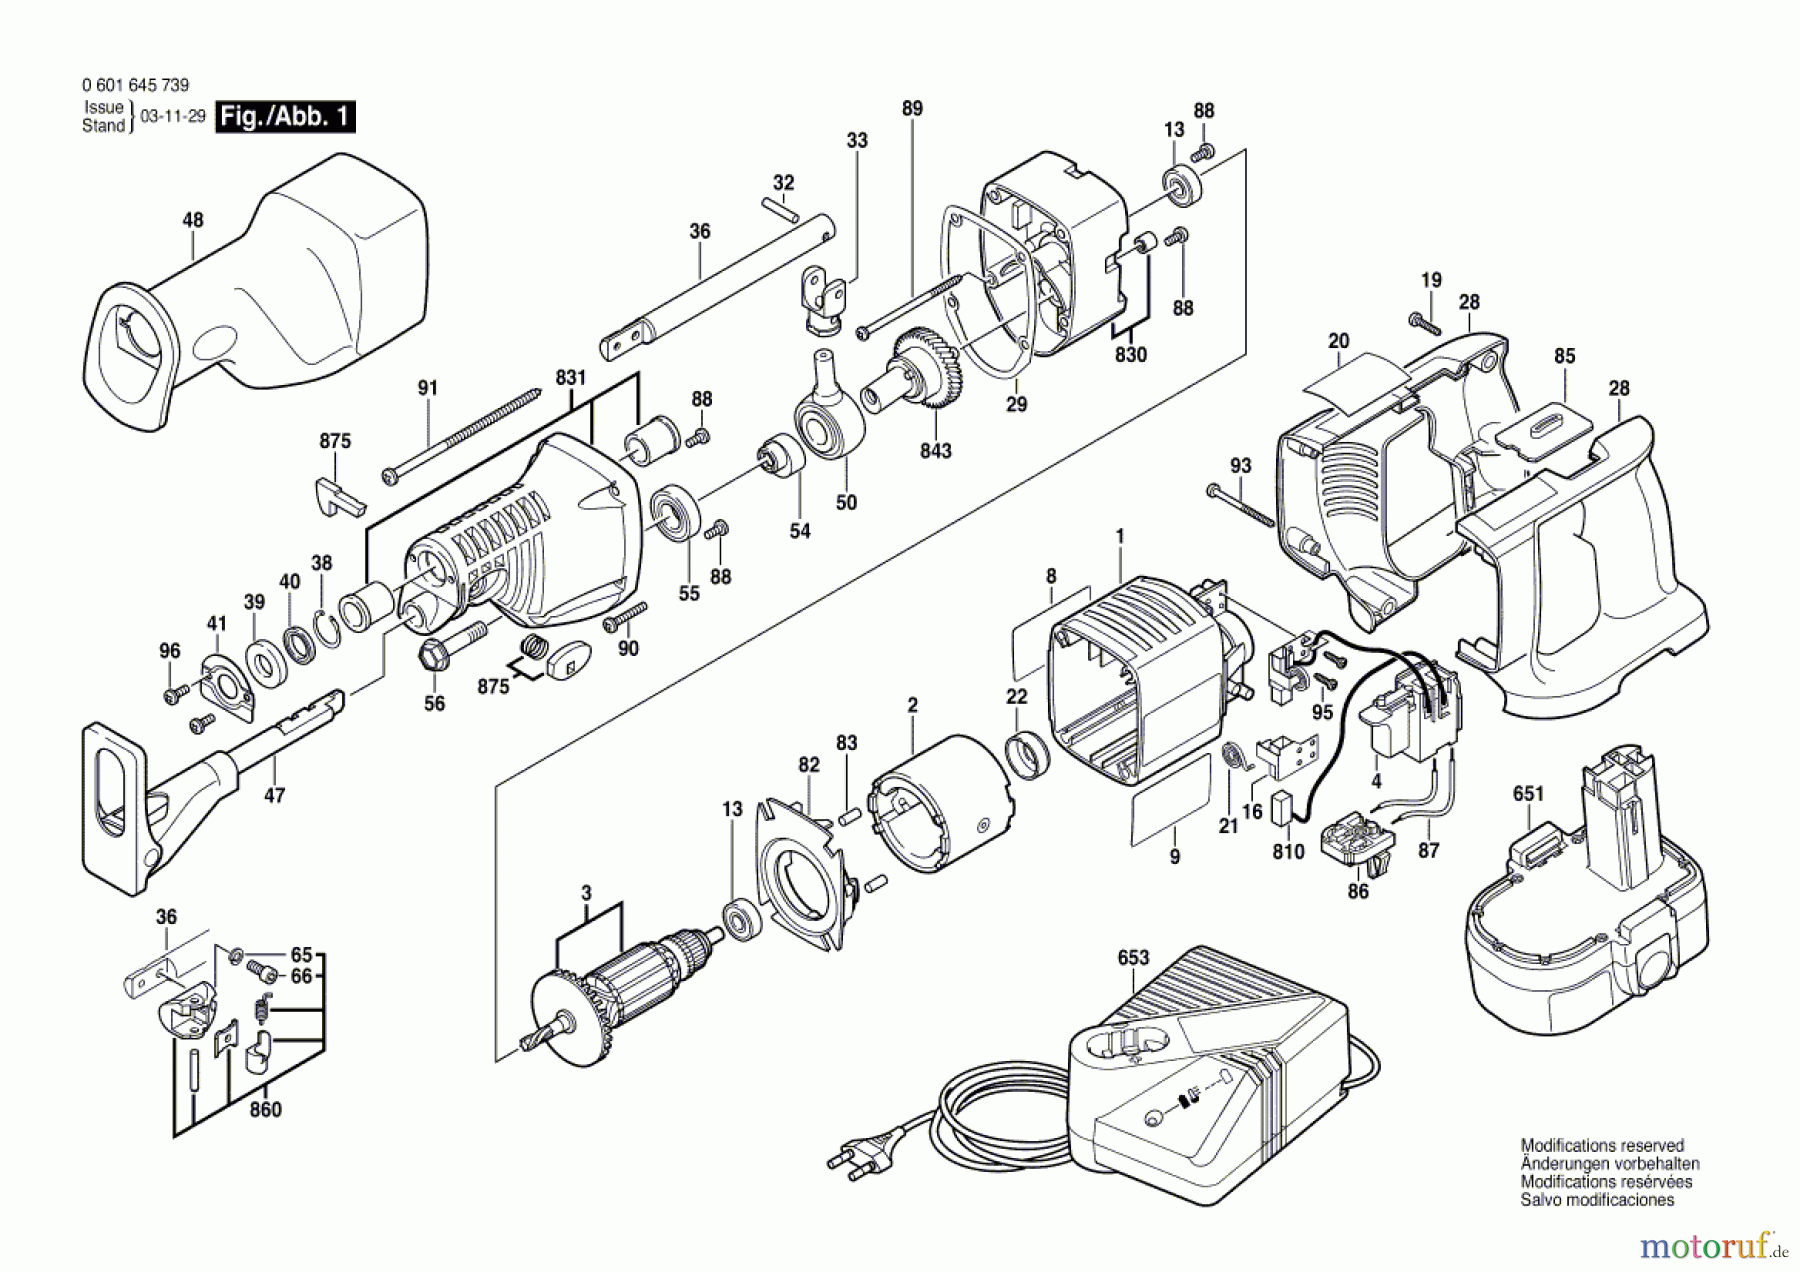  Bosch Werkzeug Säbelsäge GSA 24 VE Seite 1